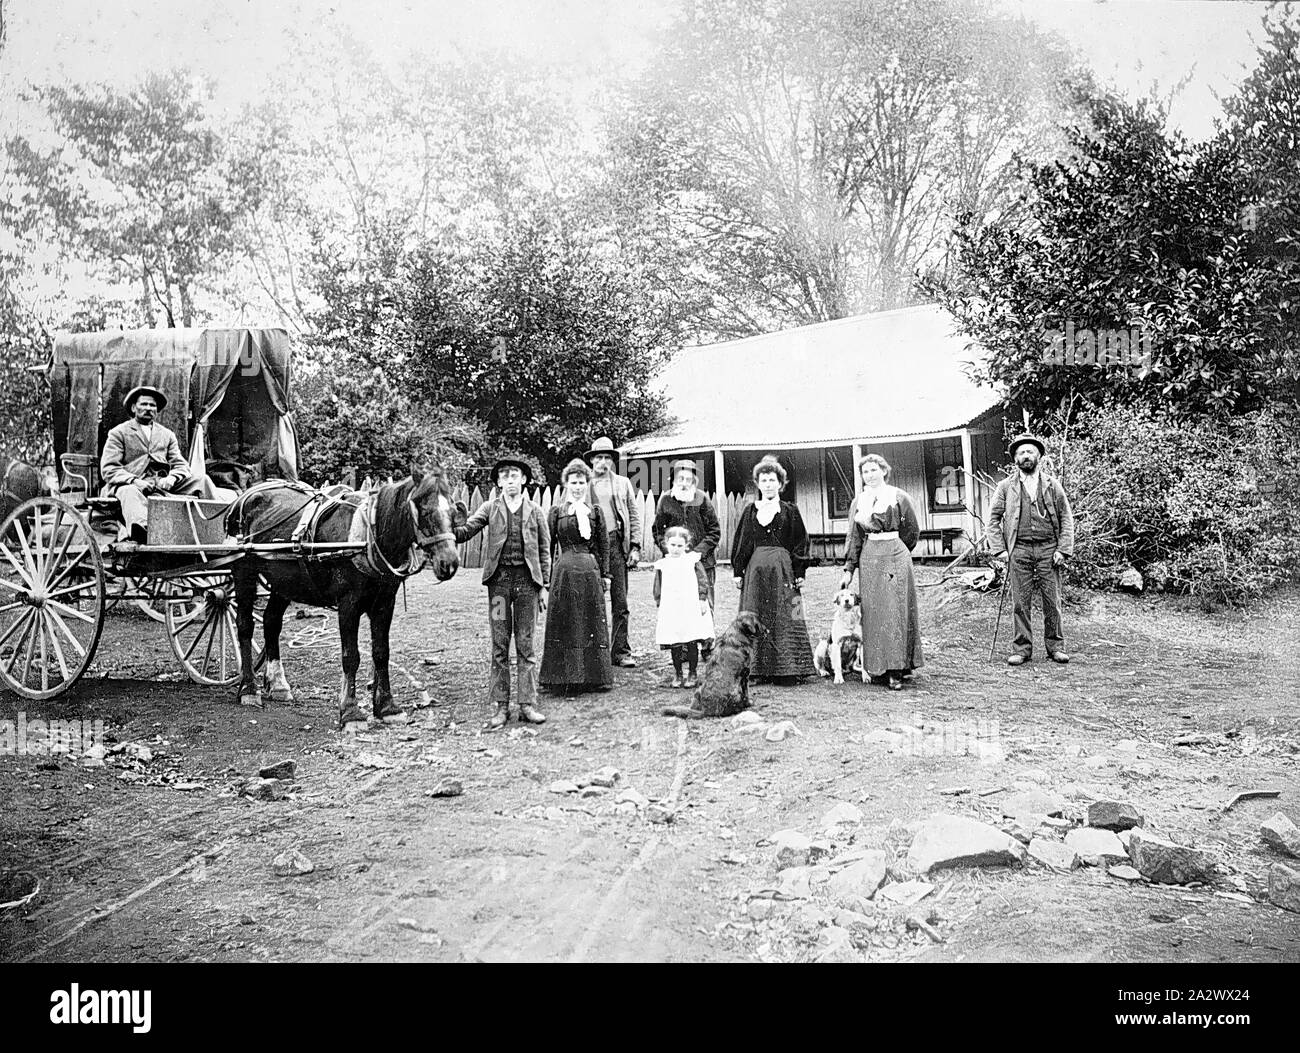 Negative - Eldorado Bezirk, Victoria, ca. 1890, eine große Familie Gruppe vor einem kleinen weatherboard Haus. Es erscheint vier Generationen auf dem Foto zu sein. Einer der Männer sitzt auf einem Buggy mit einem Pferd genutzt. Ein weiterer Planwagen im Hintergrund Stockfoto